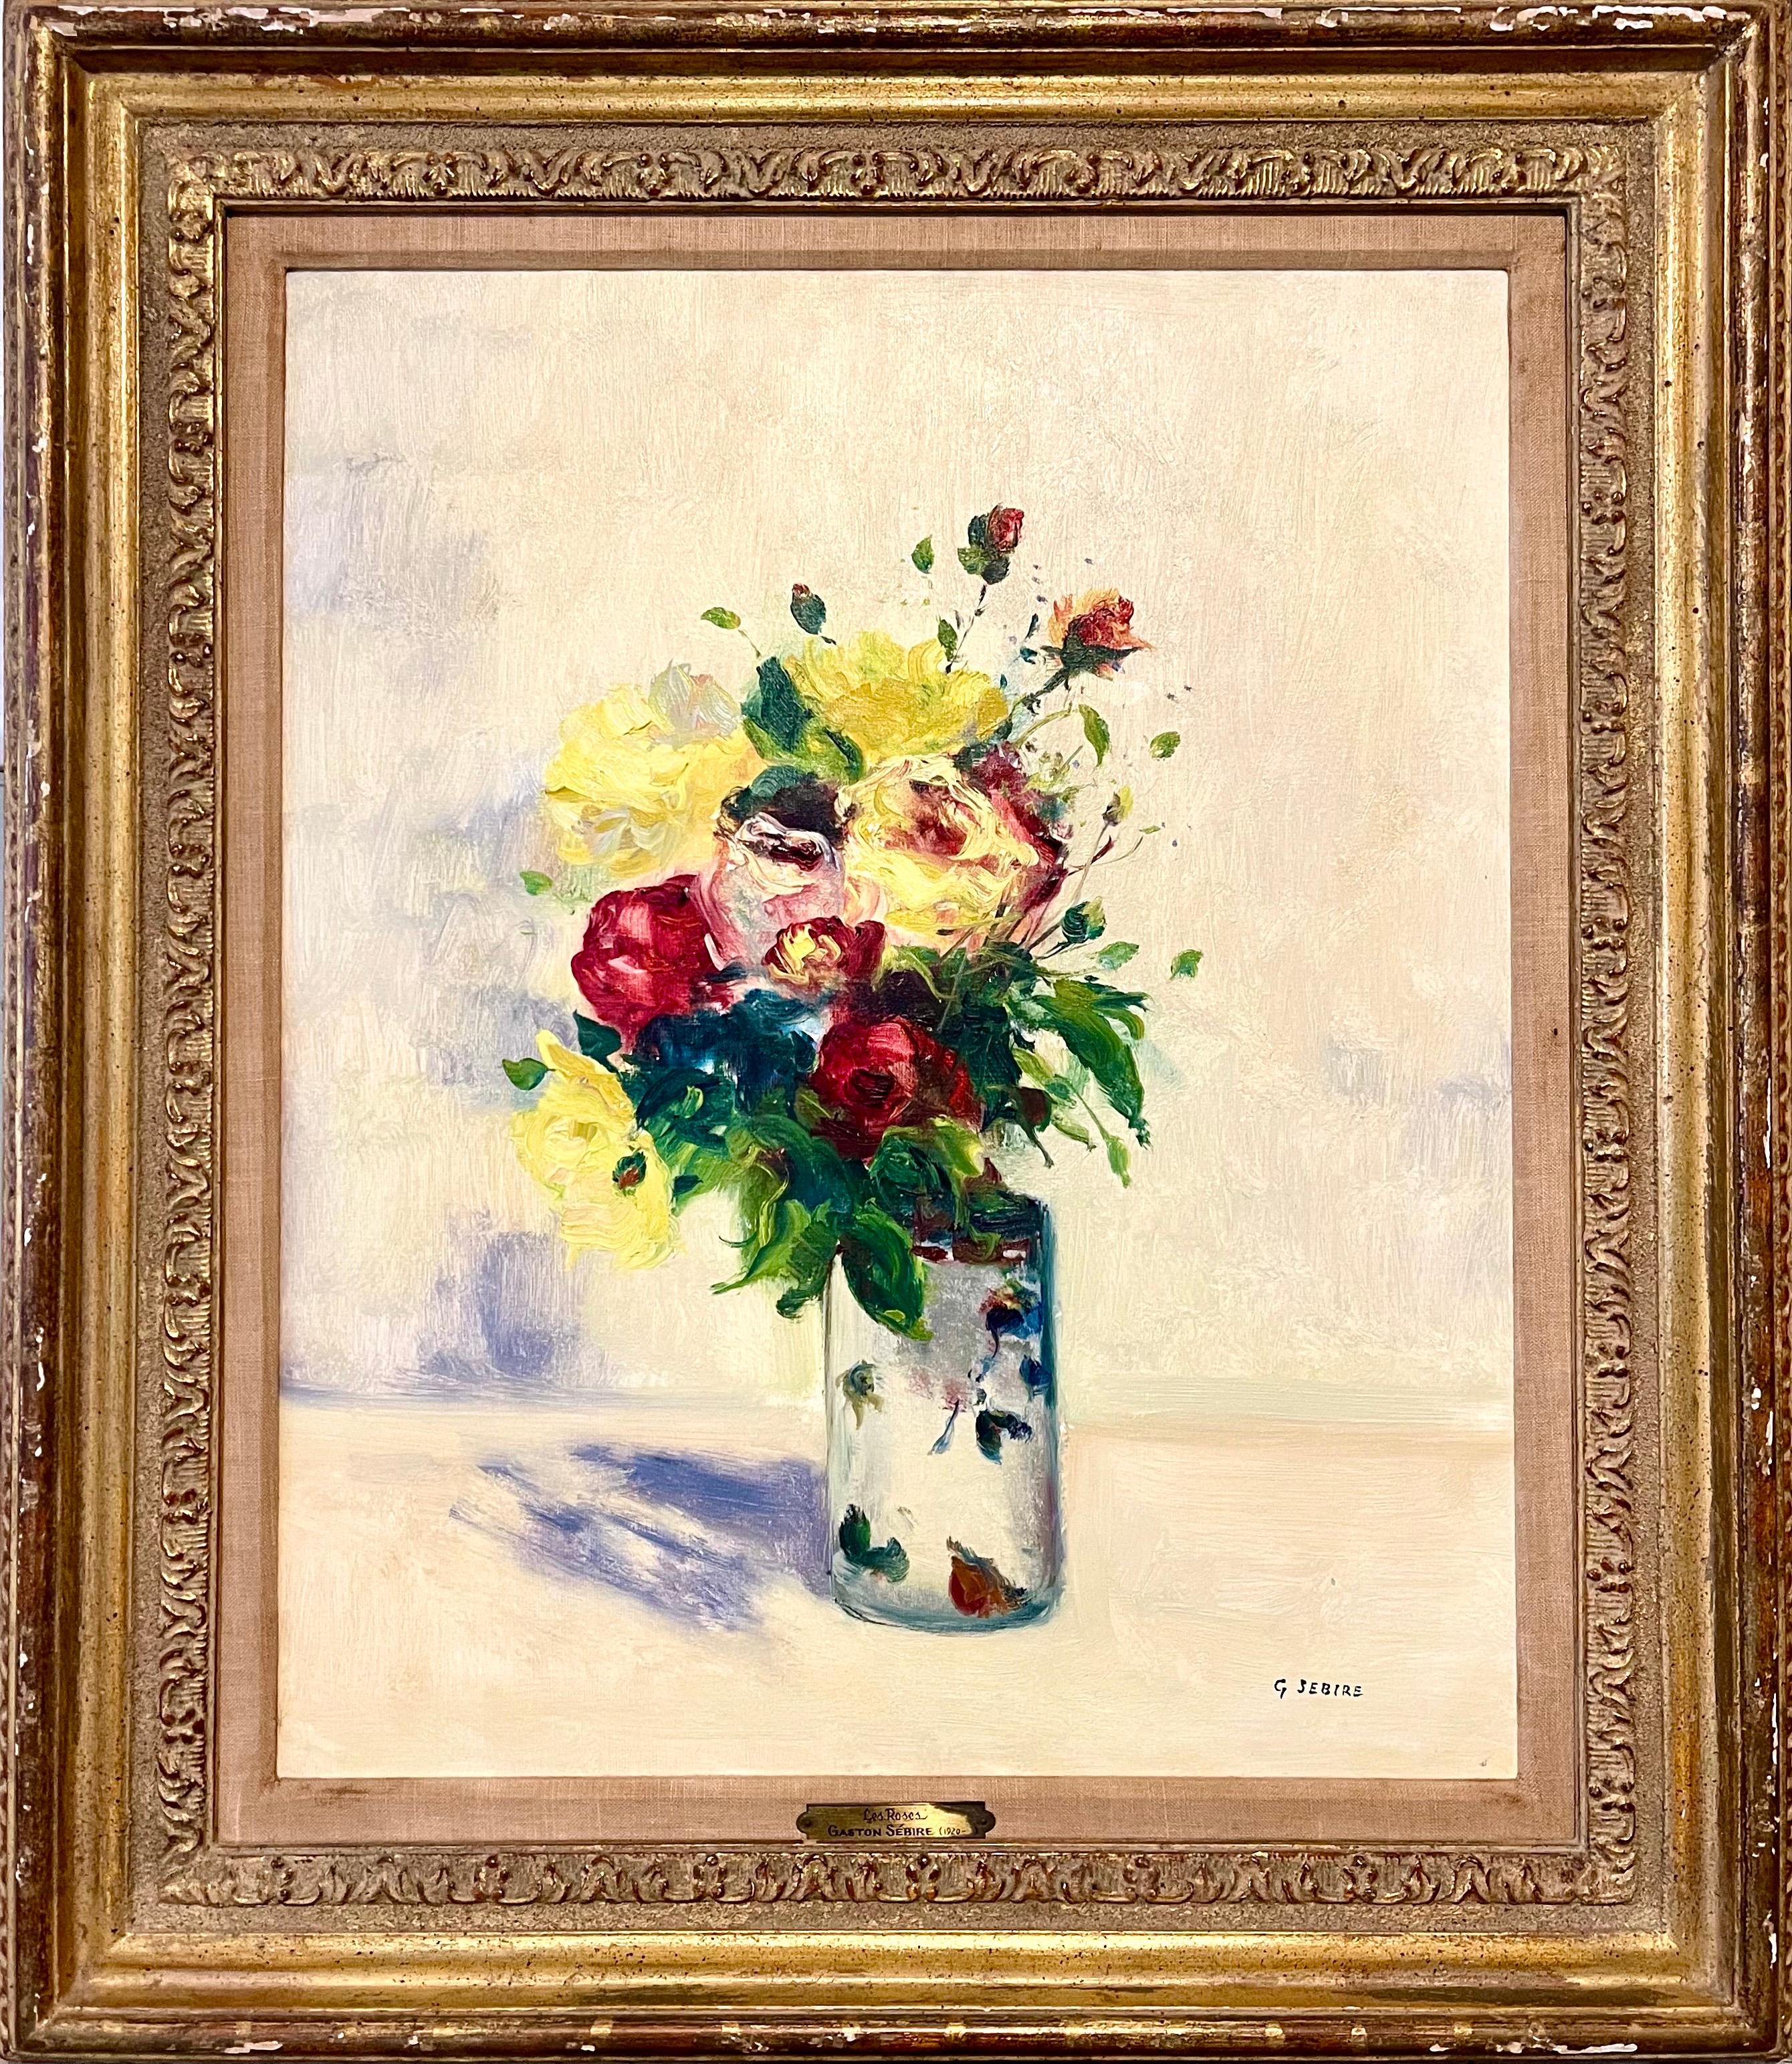 Les Roses
Bouquet mixte de roses, peinture à l'huile

PROVENANCE : Acheté aux Findlay Galleries à Chicago, Illinois à la fin des années 1960. Porte leur étiquette au verso et possède leur étiquette de prix originale

MESURES
Cadre : 32" X 27 3/4"